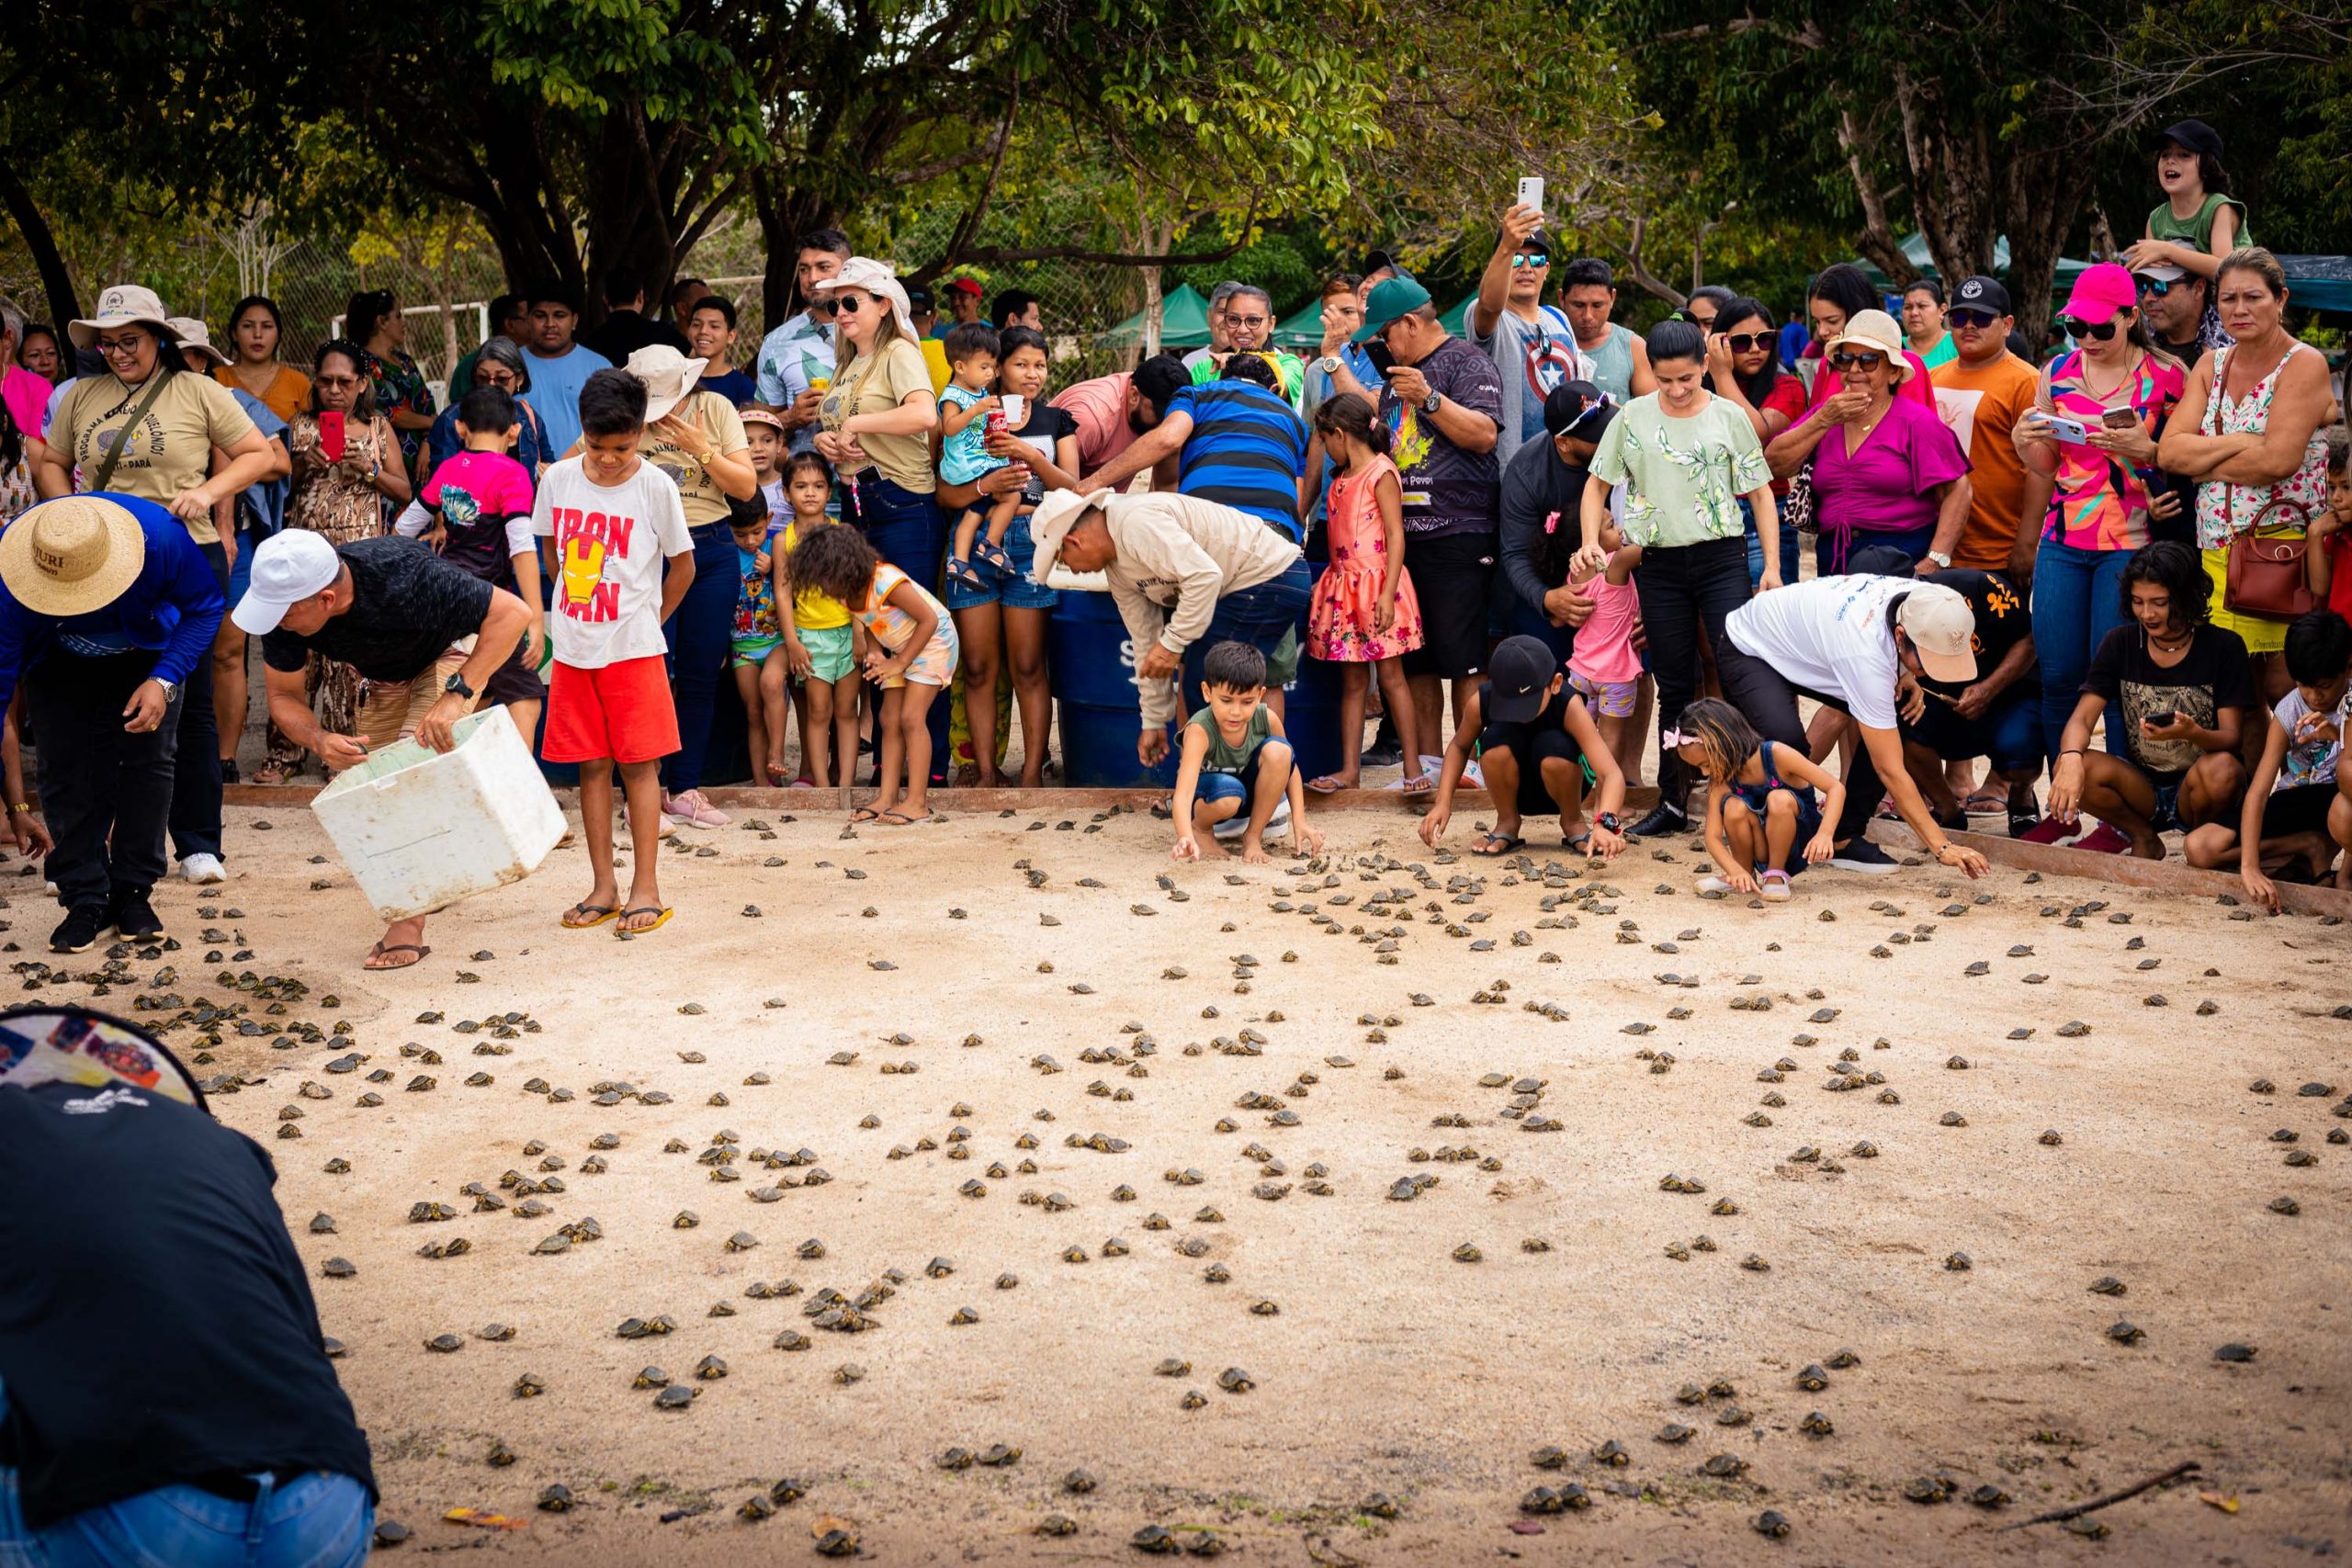 IMG 7352 scaled - Soltura de 4 mil filhotes de tartarugas amazônicas emociona paraenses